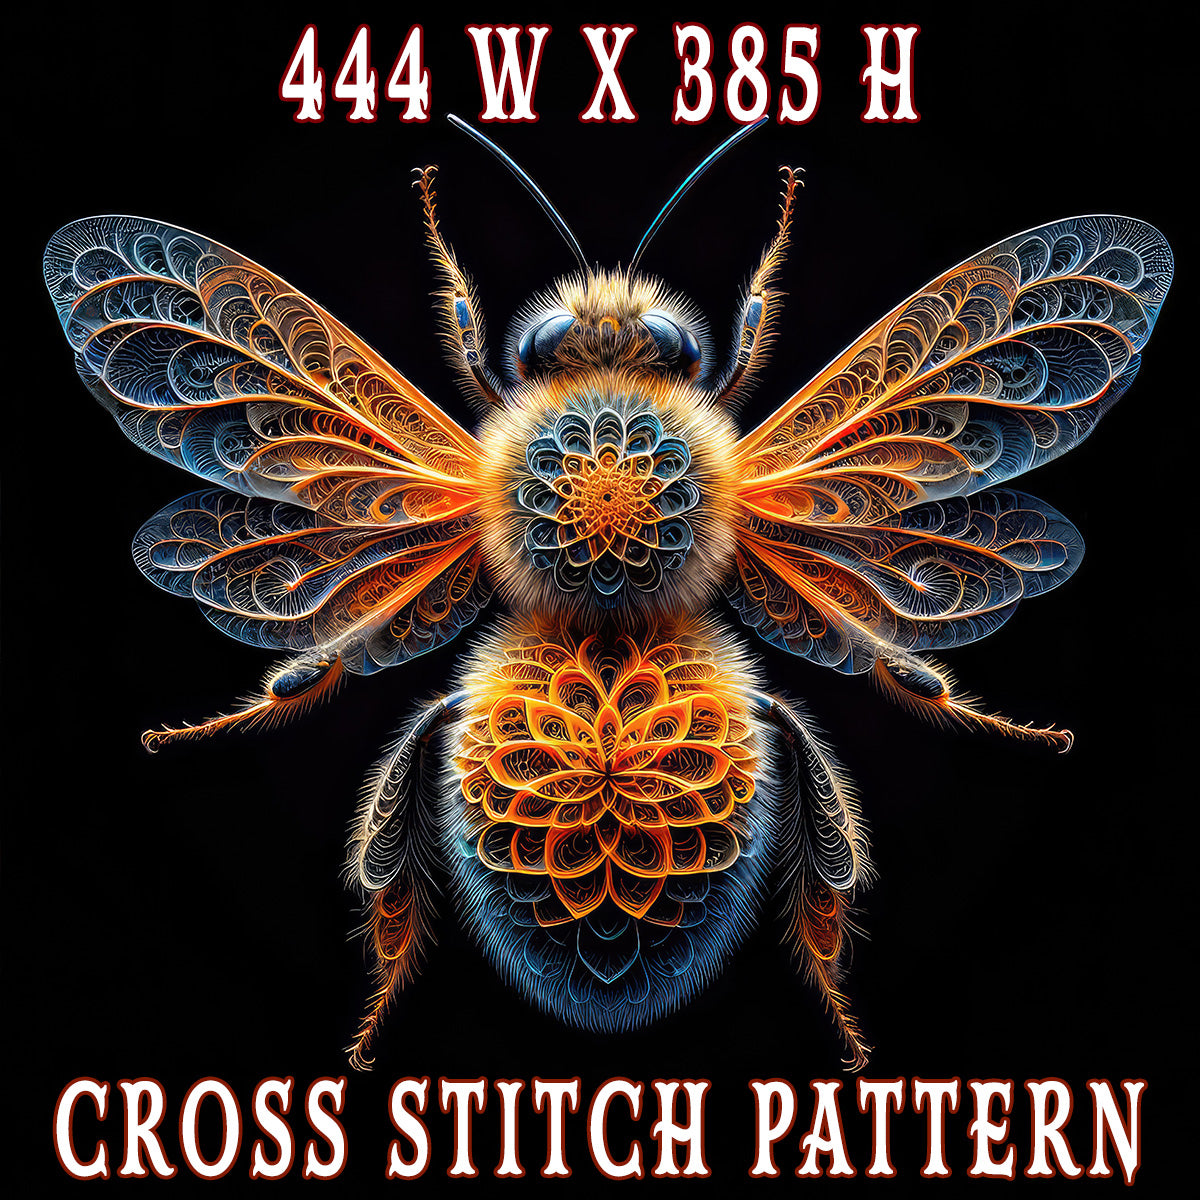 The Illuminated Apiarist Cross Stitch Pattern